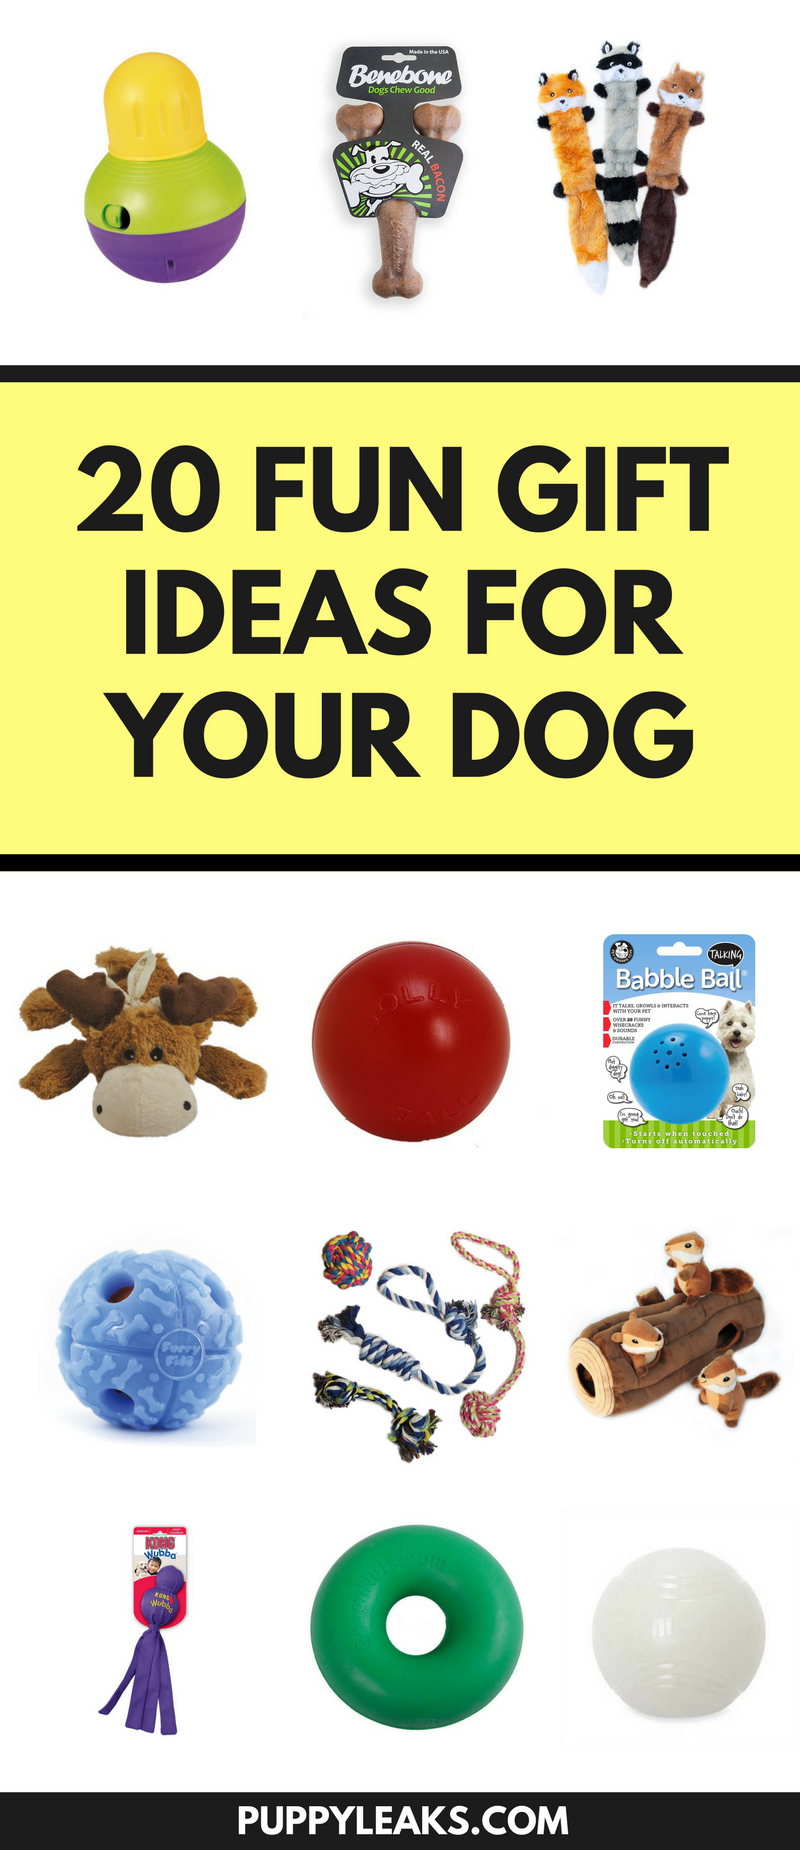 20 ideias divertidas de presentes de Natal para seu cachorro